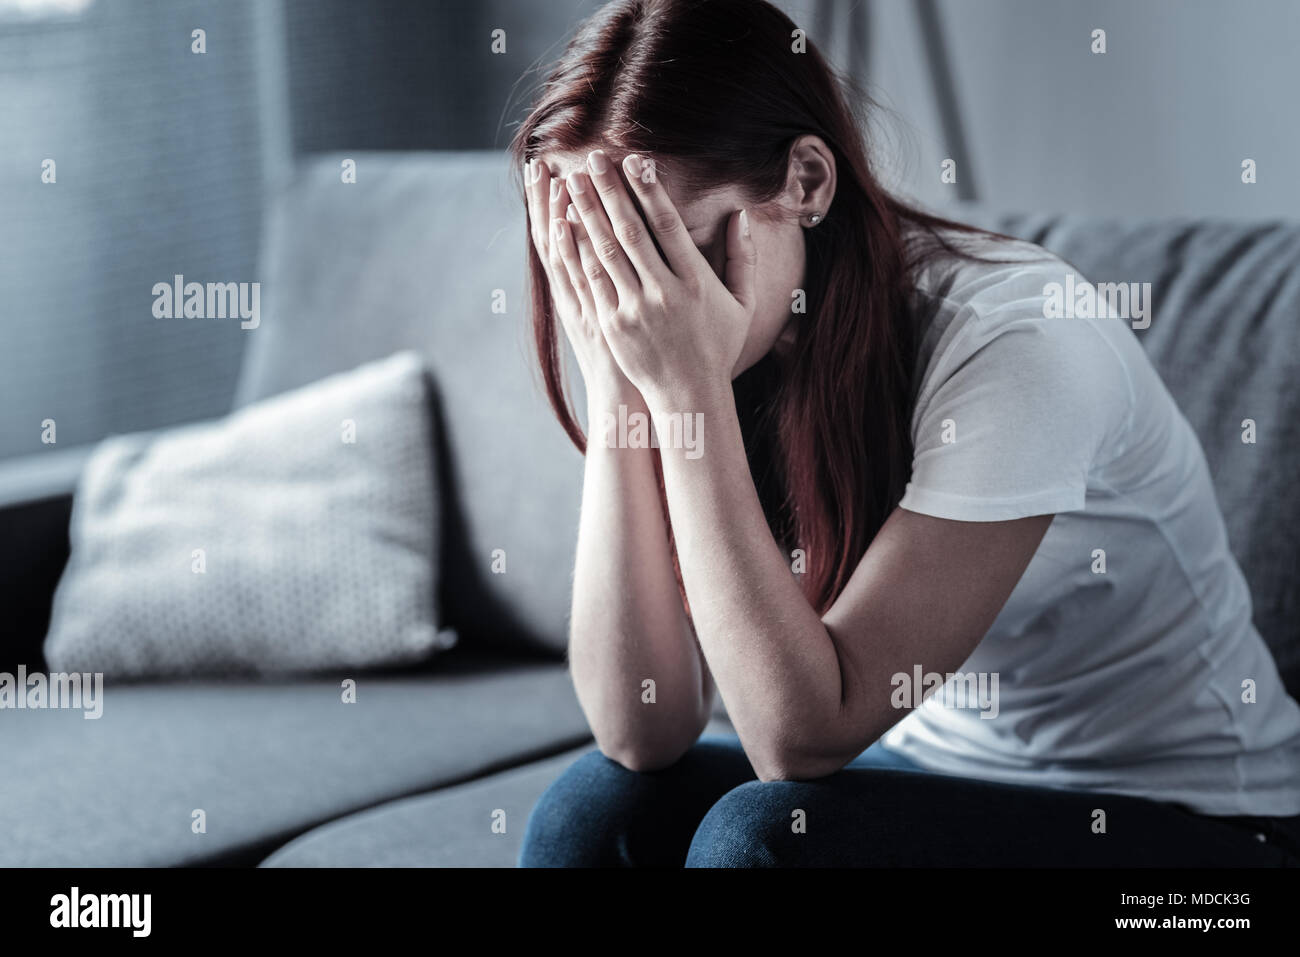 Joven Mujer deprimida ocultando su rostro Foto de stock